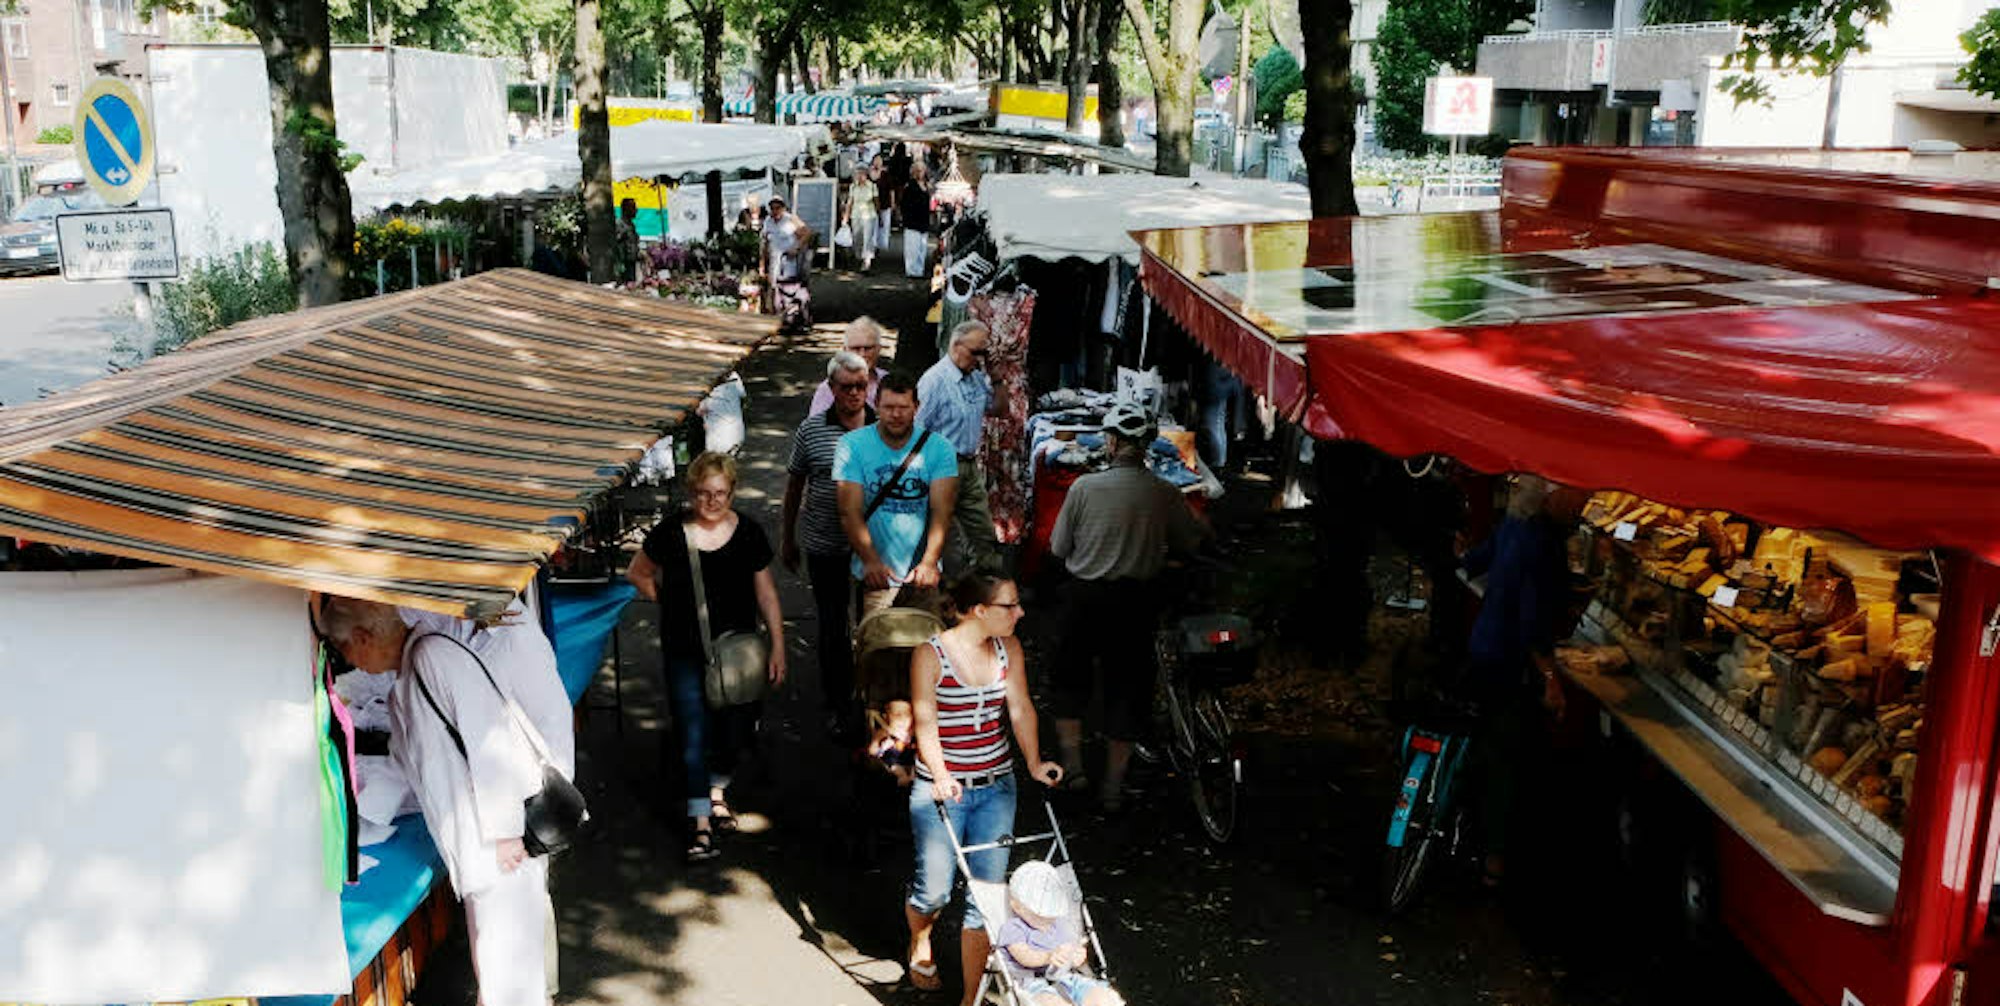 Der Riehler Wochenmarkt ist einer der ältesten und vielseitigsten in Köln.